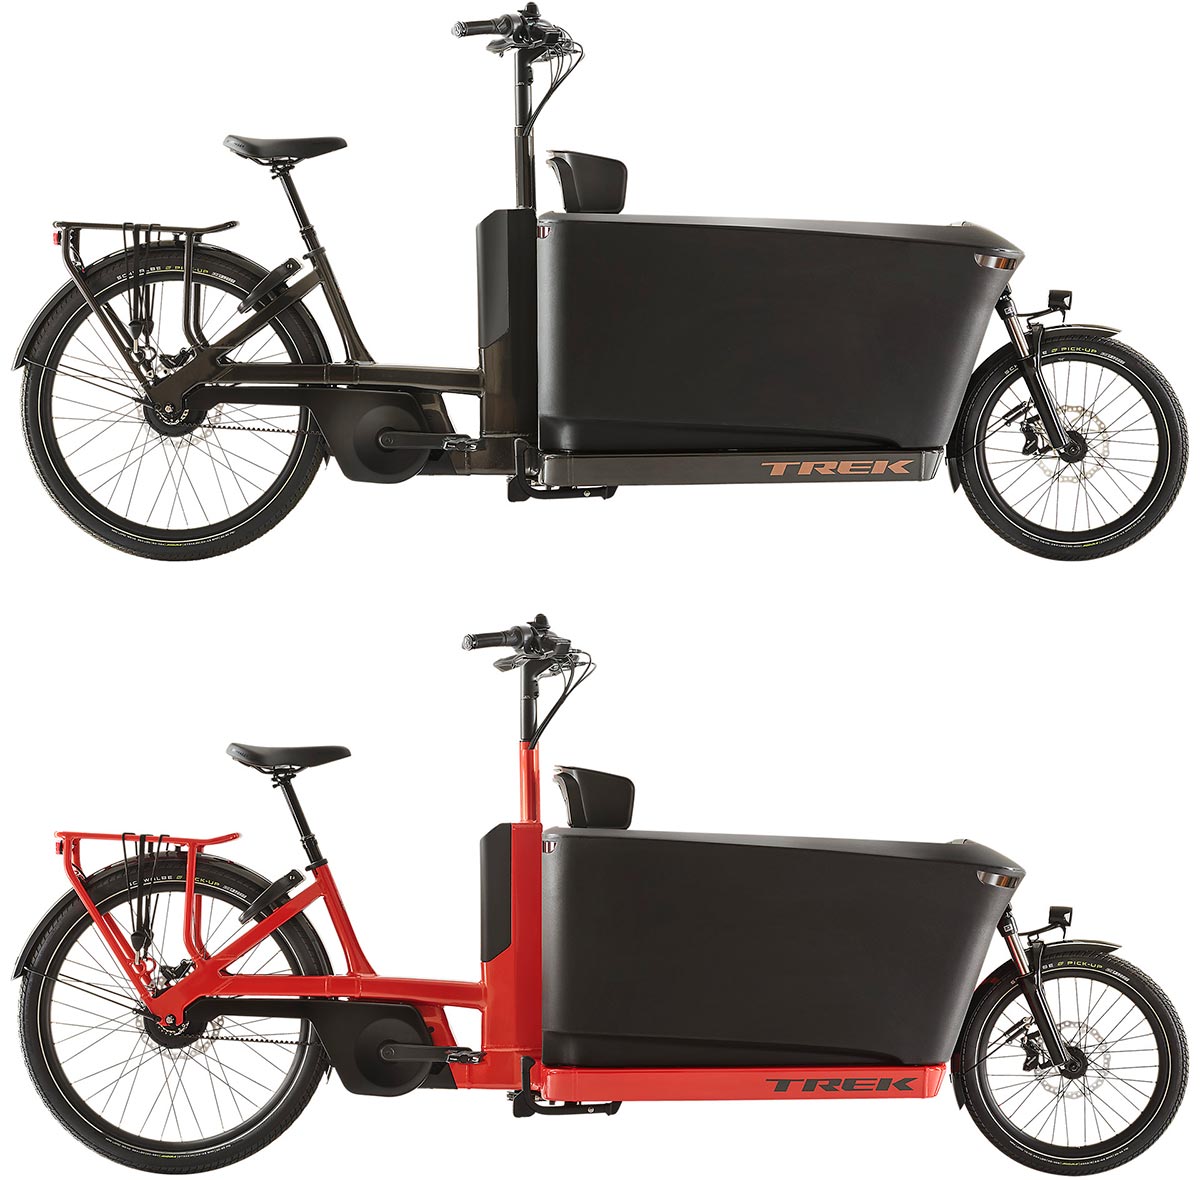 Trek Bikes presenta las Fetch+, dos bicicletas eléctricas de carga para decir adiós al coche